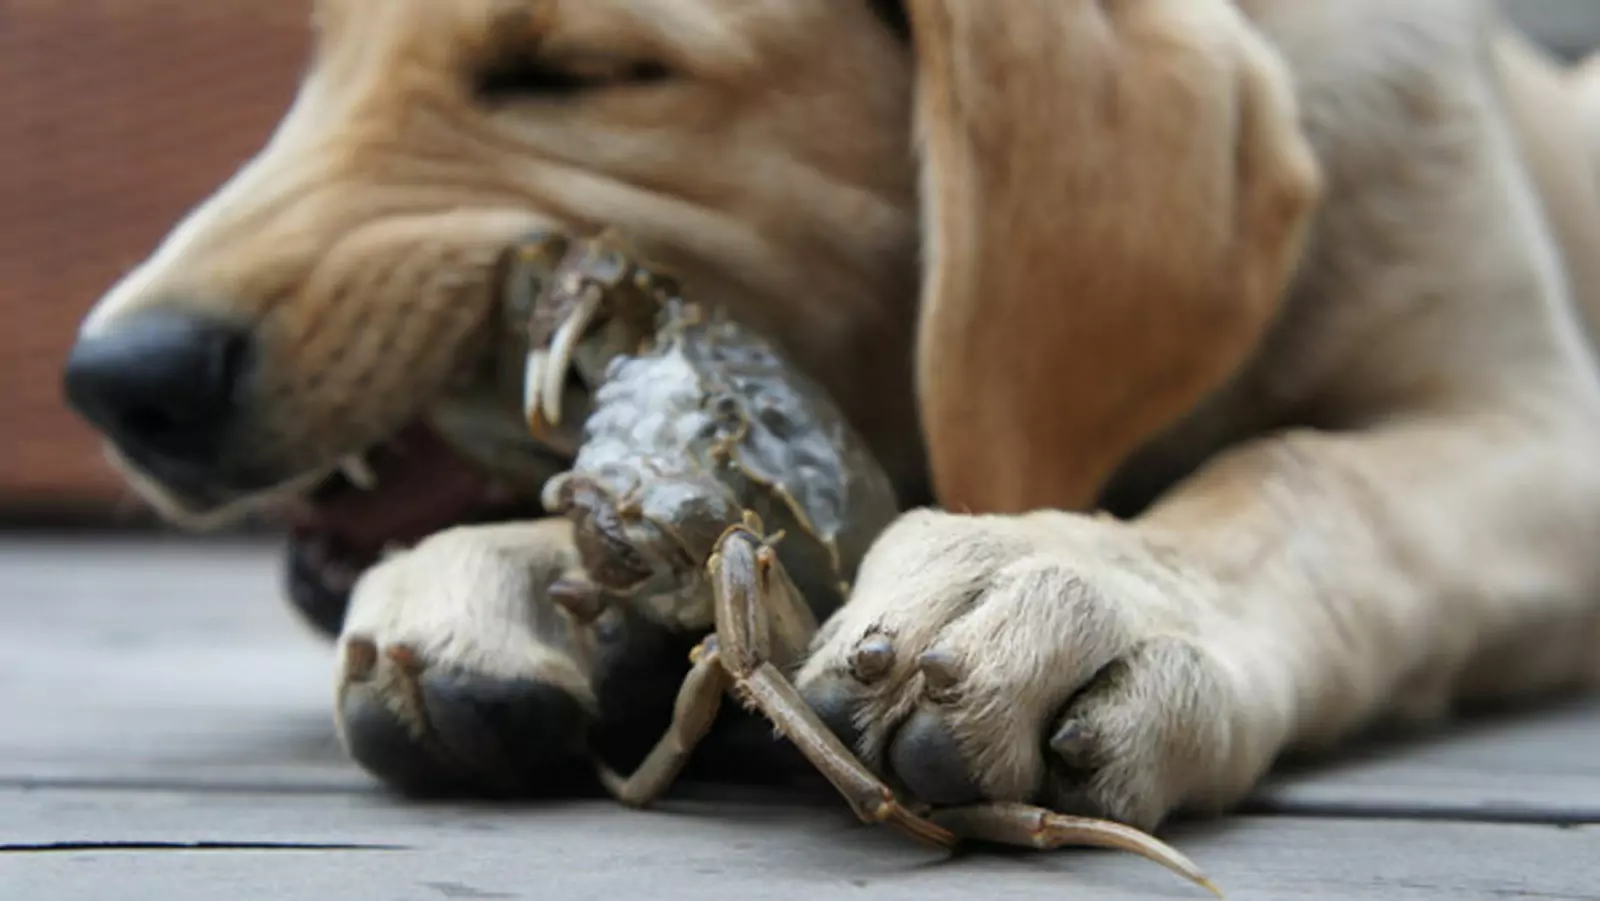 Les chiens peuvent-ils manger du crabe ? Quel est le danger pour les chiens de manger du crabe ?